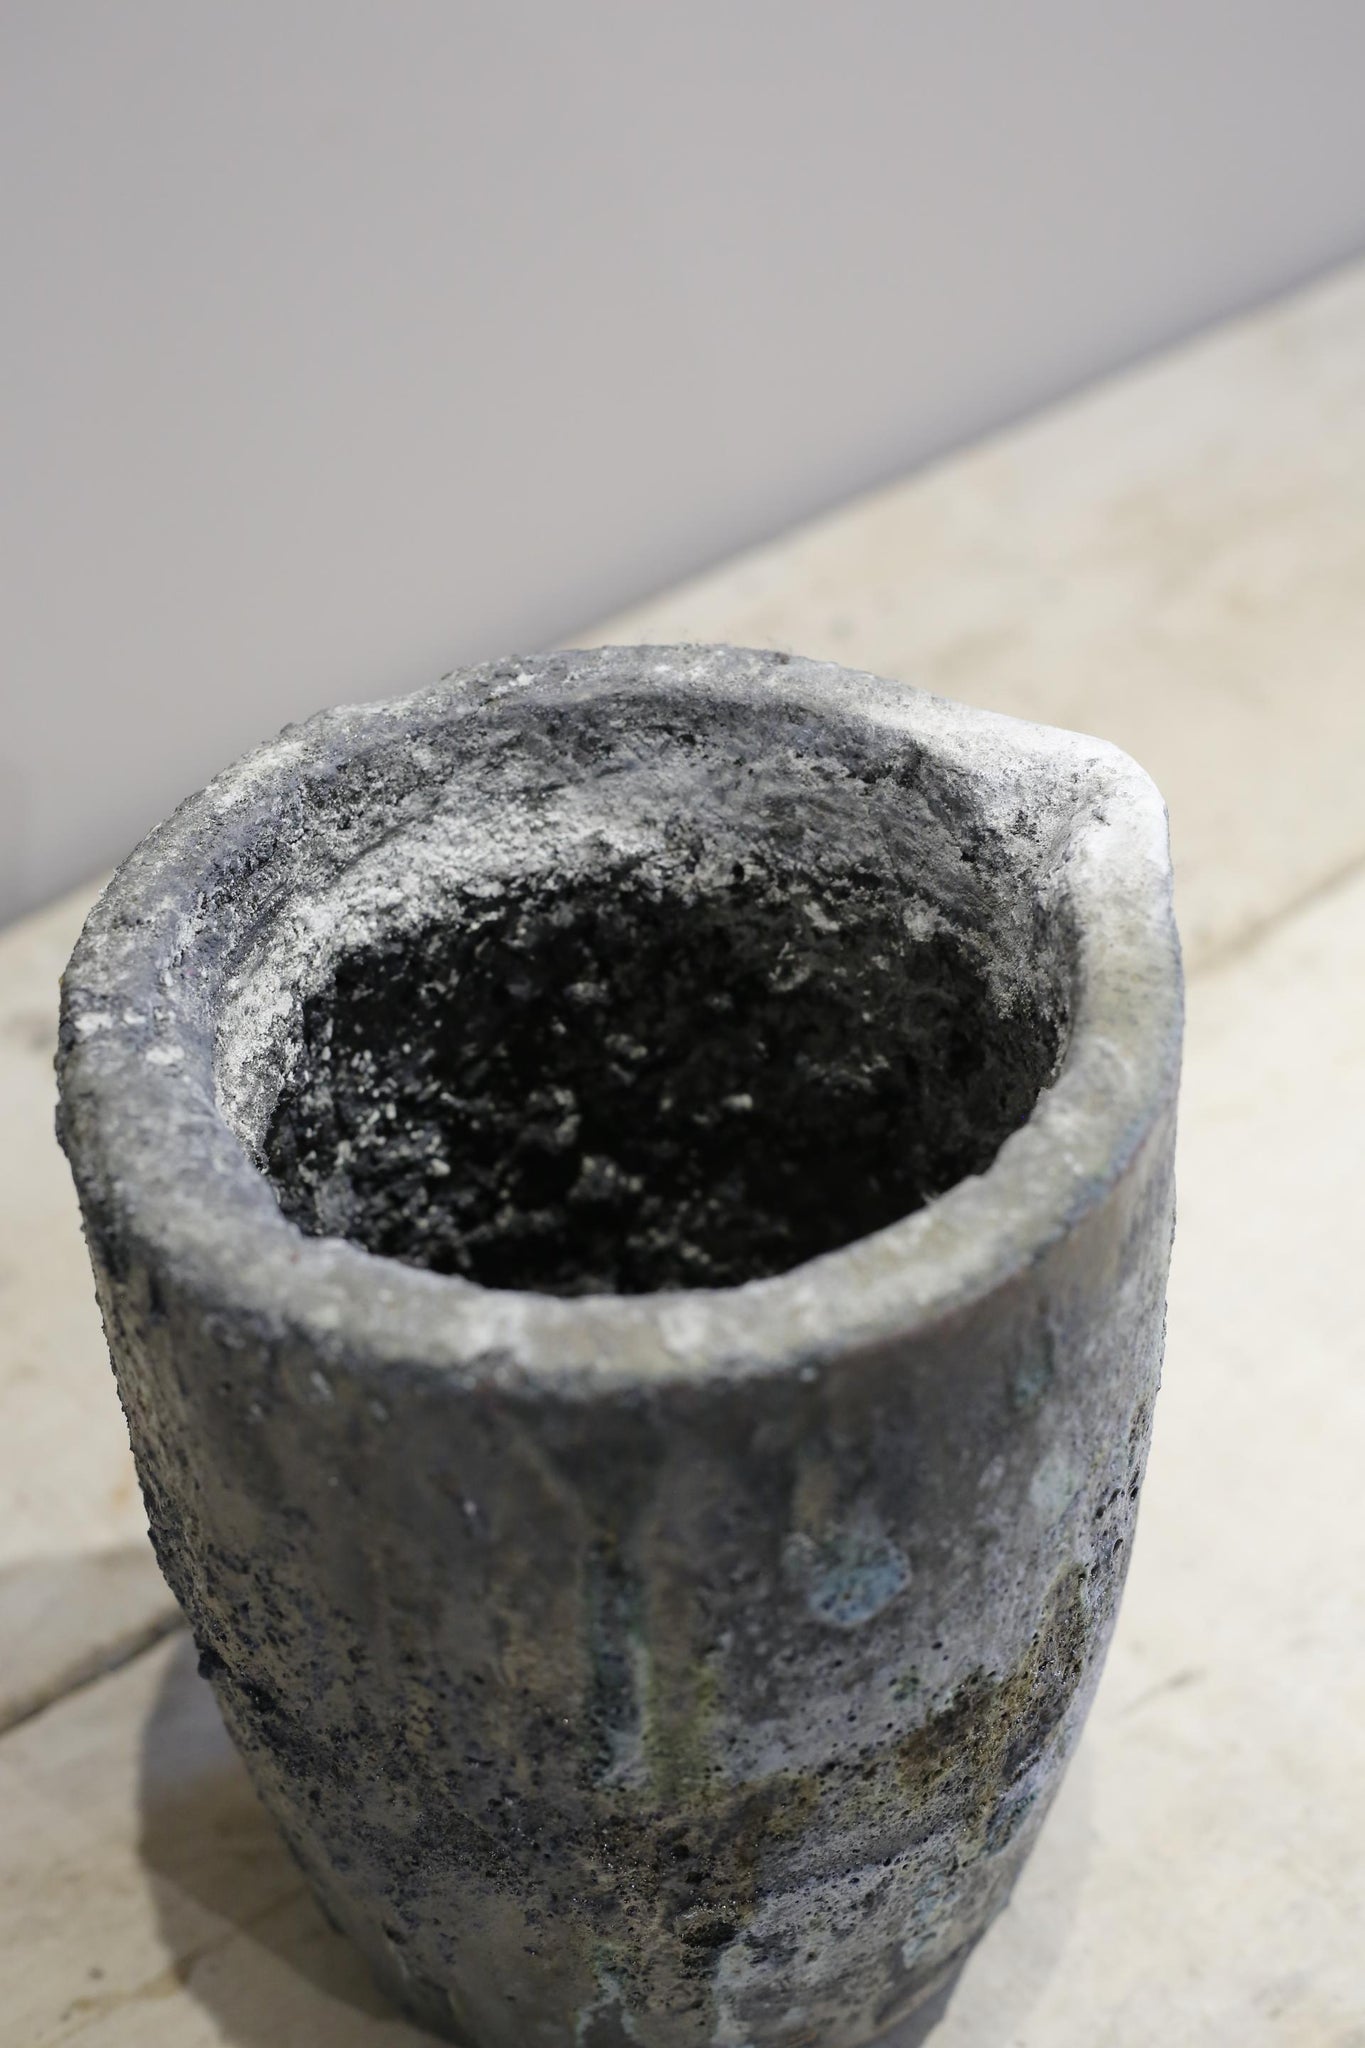 Foundry smelting pot #4